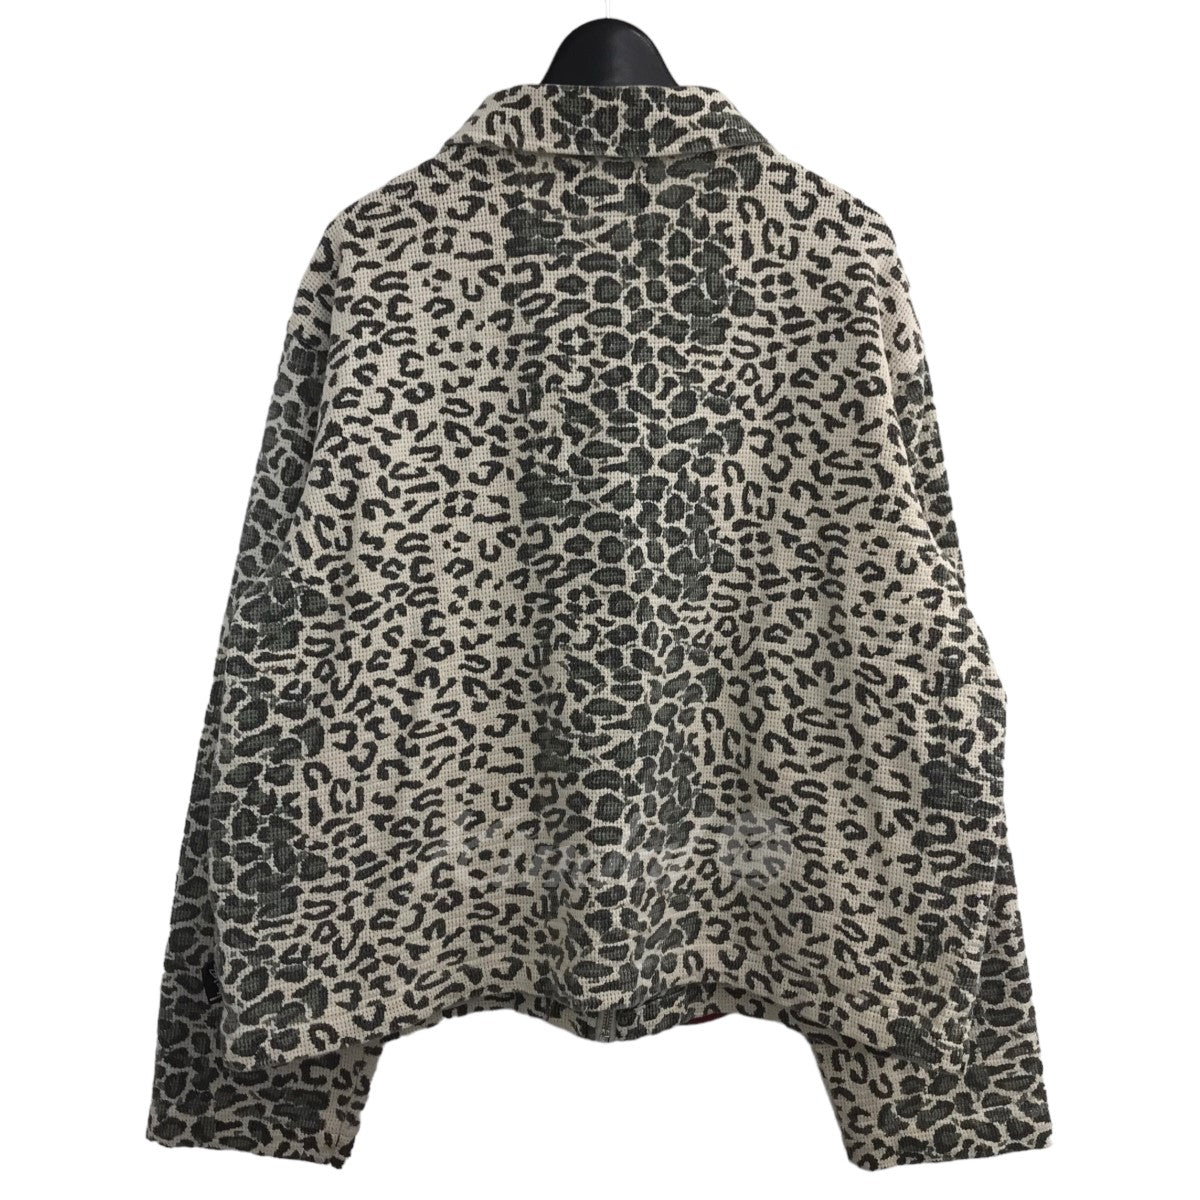 ｢Leopard Mesh Zip Jacket｣ レオパードジップアップジャケット